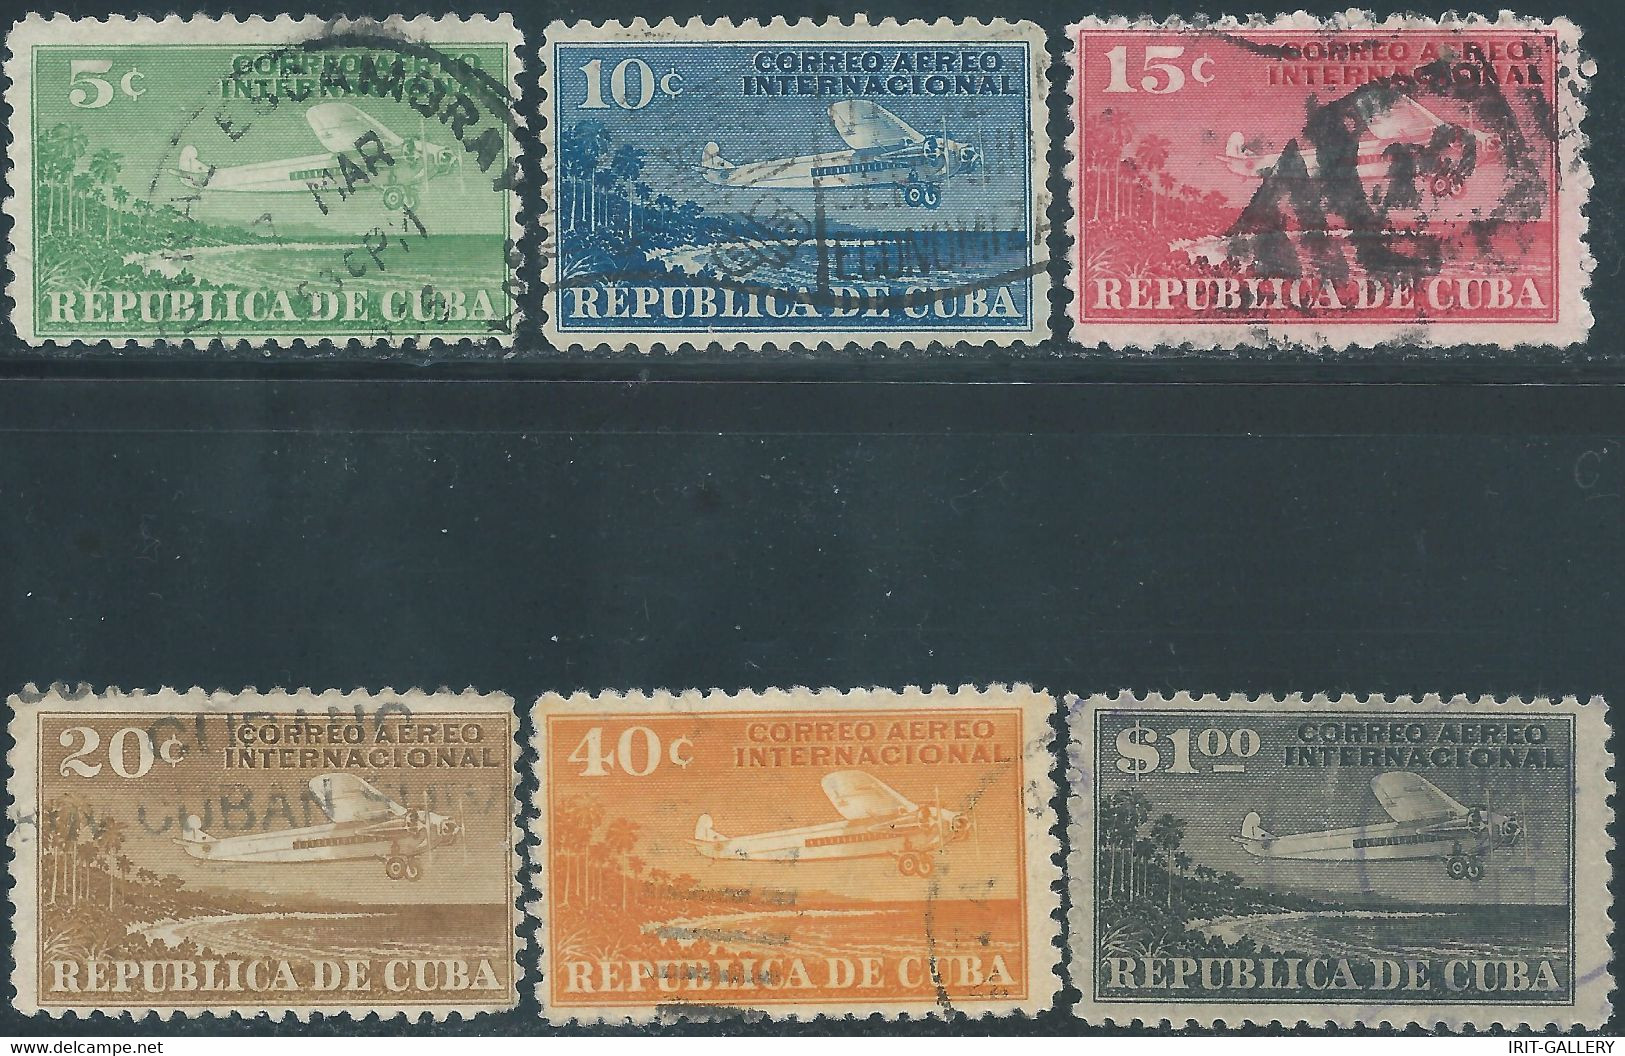 CUBA,REPUBLIC OF CUBA,1931 Airmail - For International Use - Used - Gebruikt